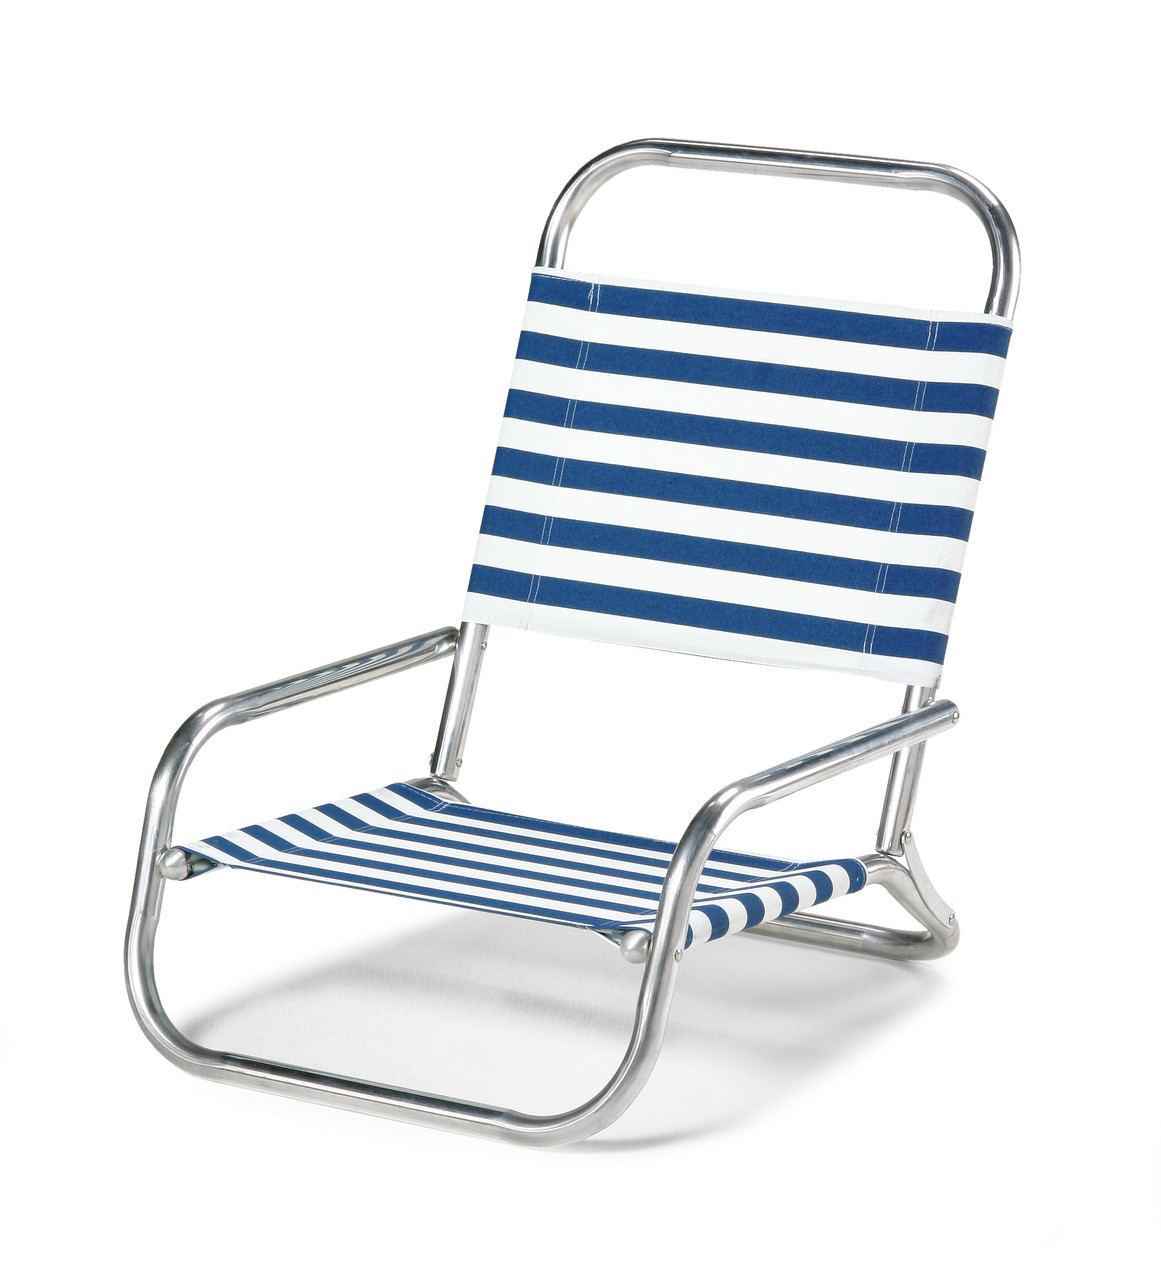 aluminum beach chair